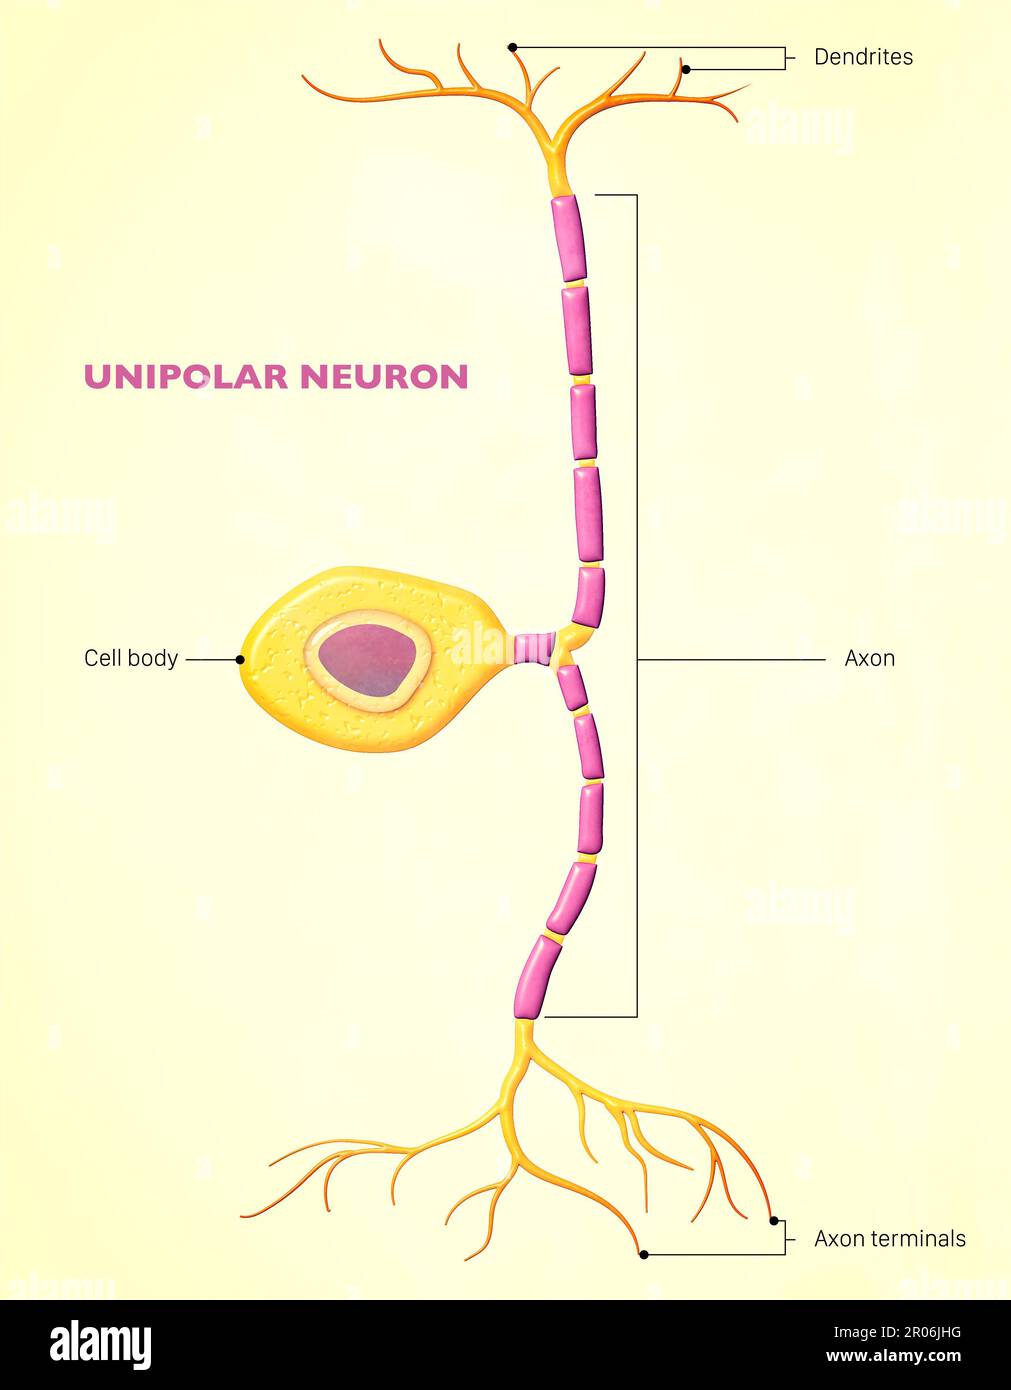 Un neurone bipolaire, ou cellule bipolaire, est un type de neurone qui a deux extensions ( axon et dendrite). Neurones sensoriels pour la transmission du sens Banque D'Images